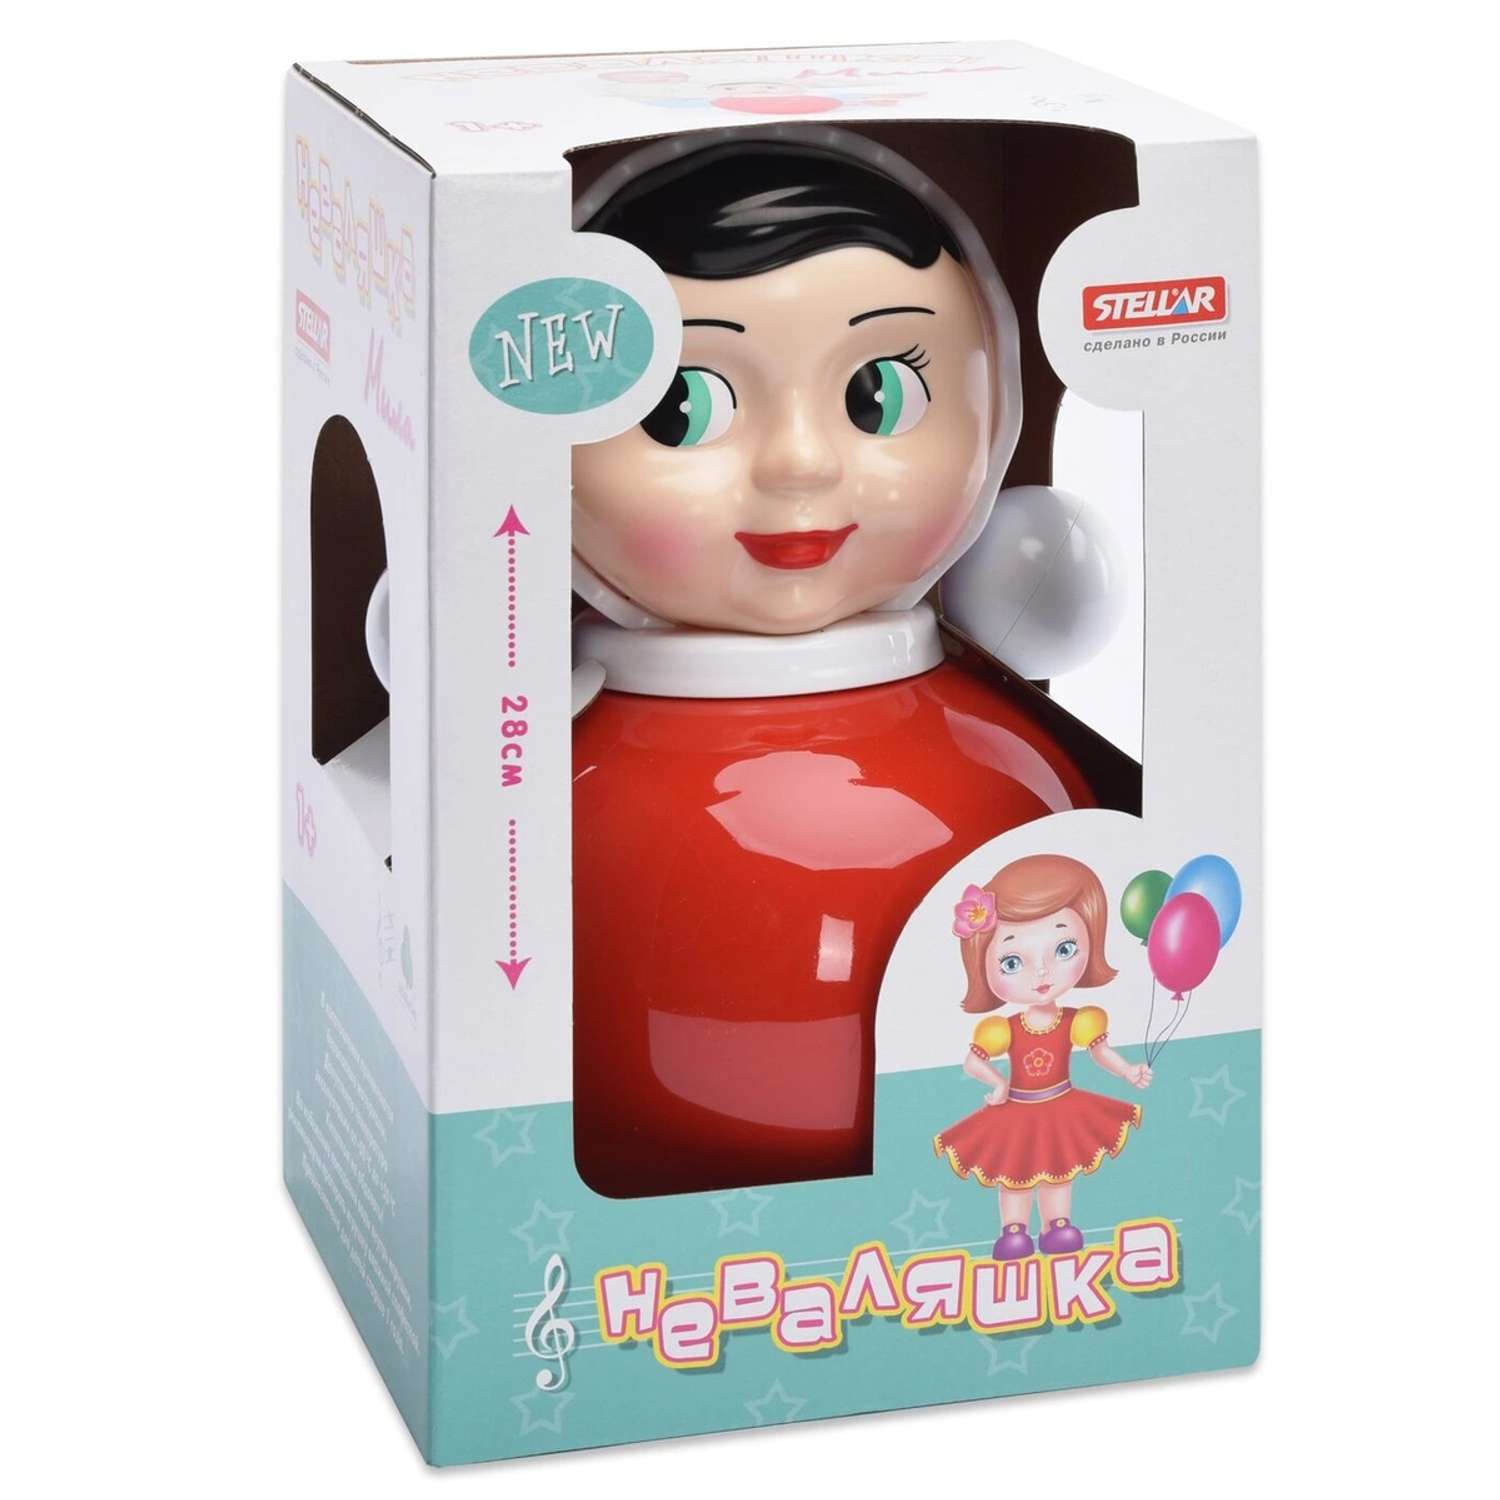 Неваляшка Стеллар "Мила", 30 см, игрушки для детей от 1 года, в коробке - фото 2